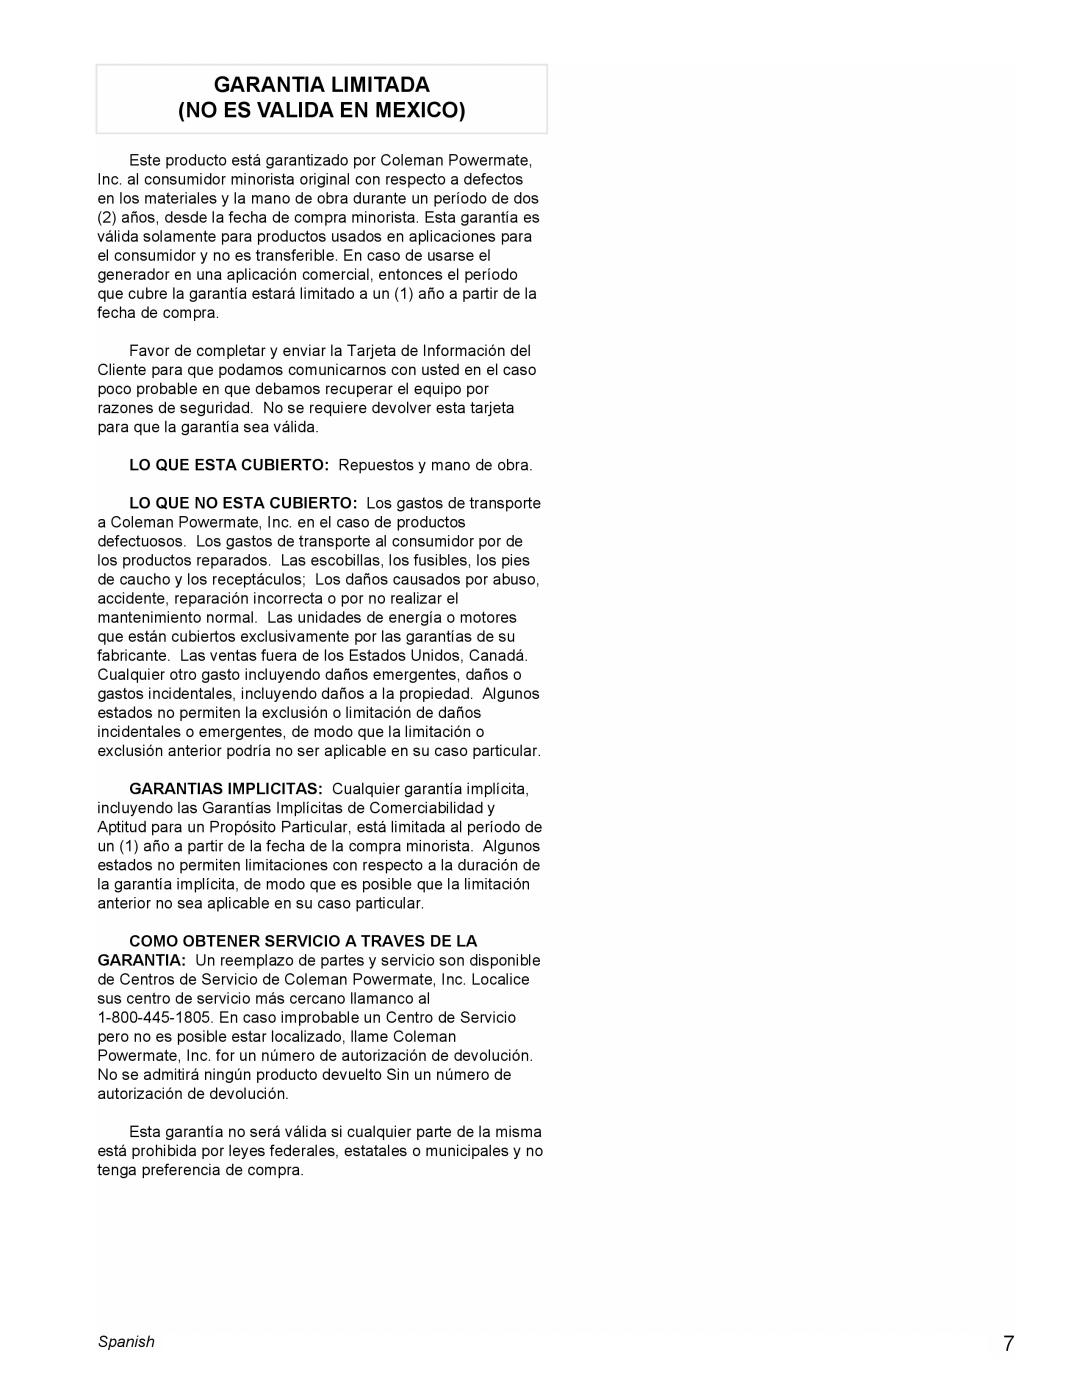 Powermate PC0495503 manual Garantia Limitada No Es Valida En Mexico, Spanish 